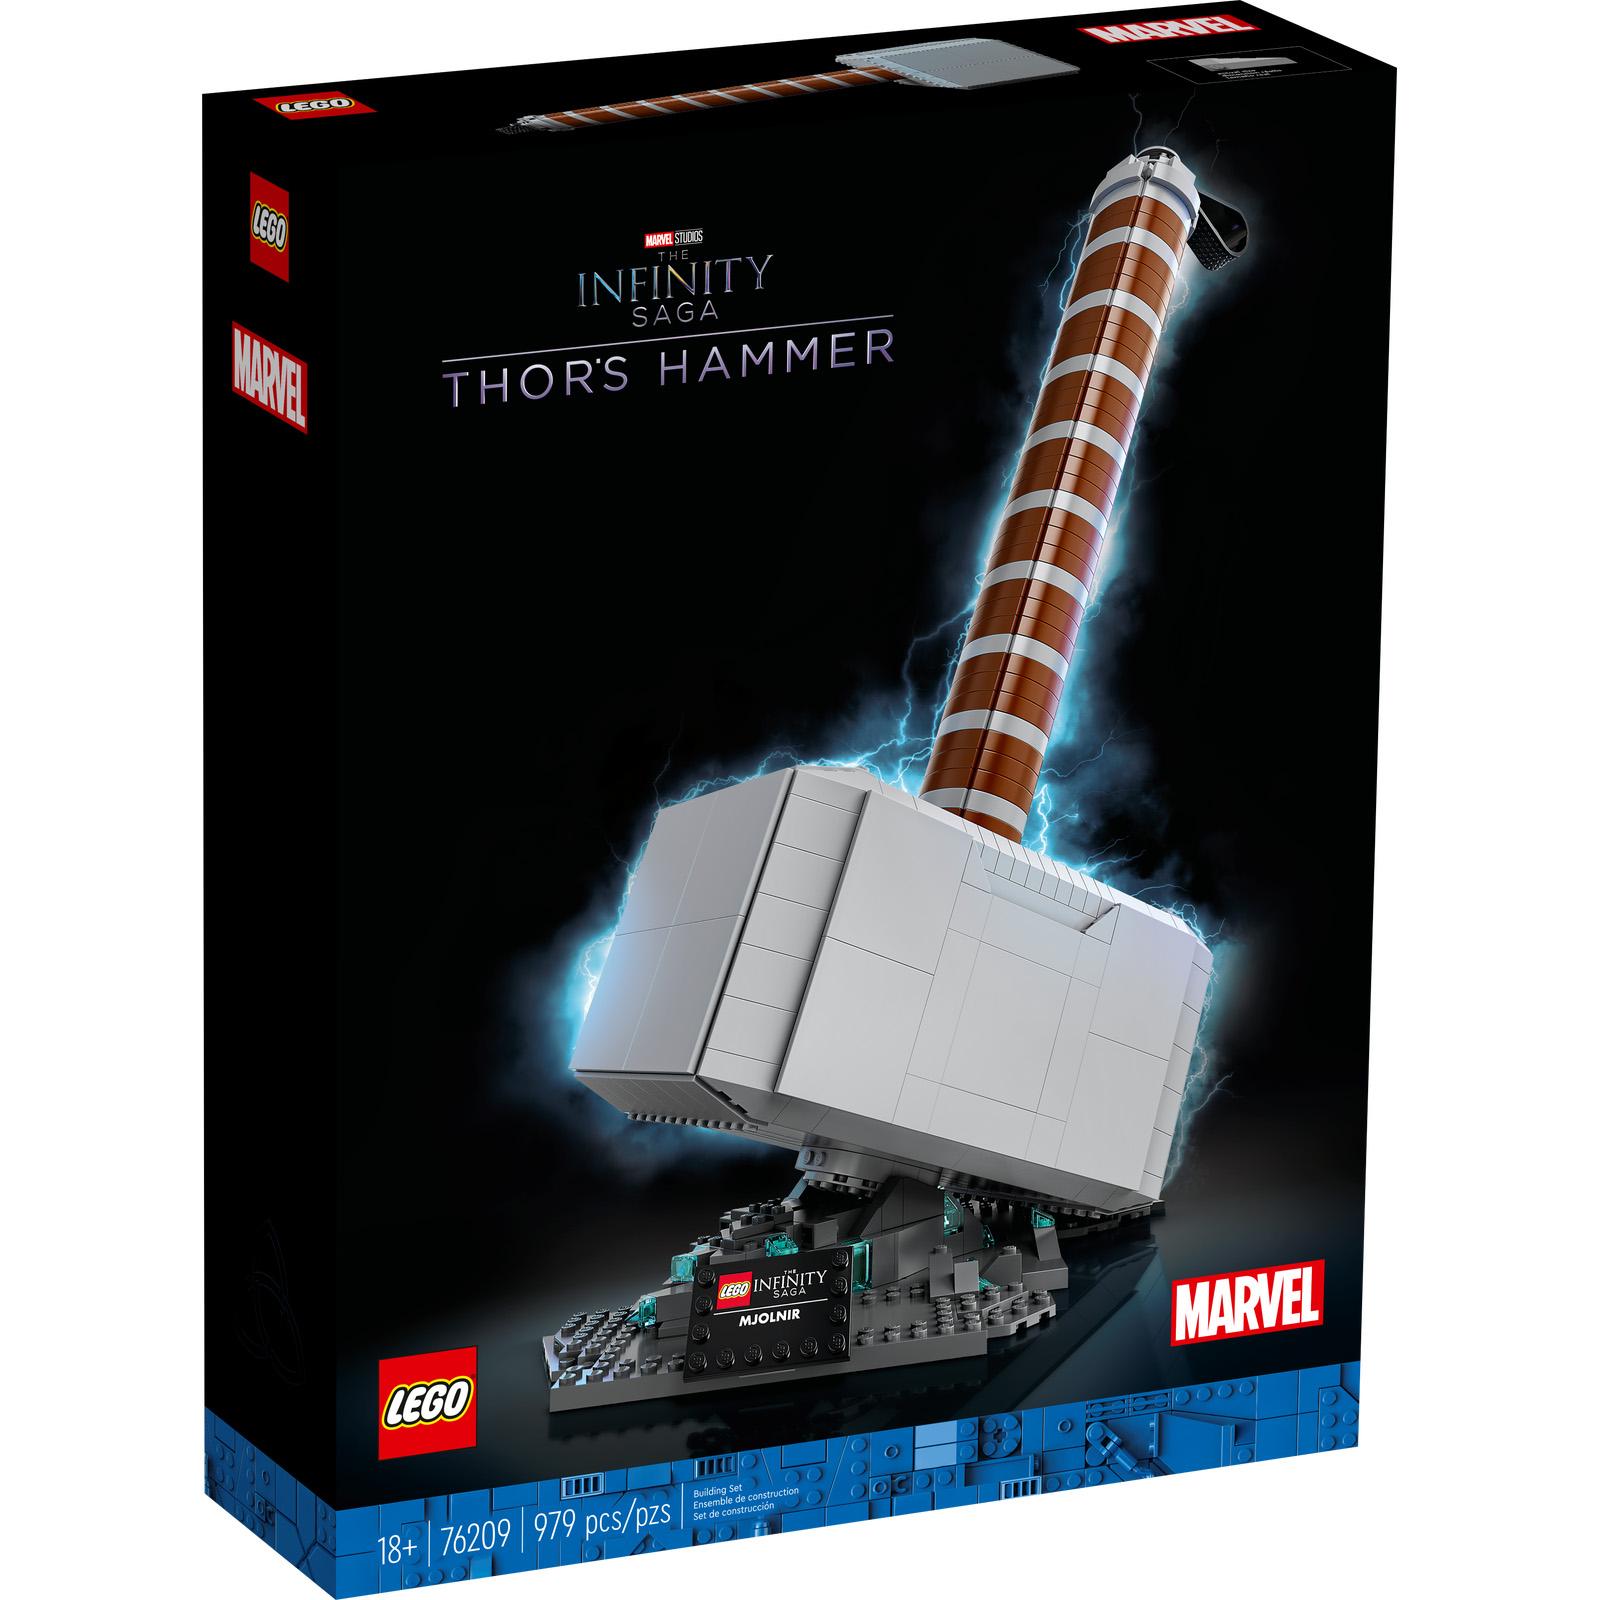 Lego Marvel Thor's Hammer 76209 Building Kit for $79.99 Shipped